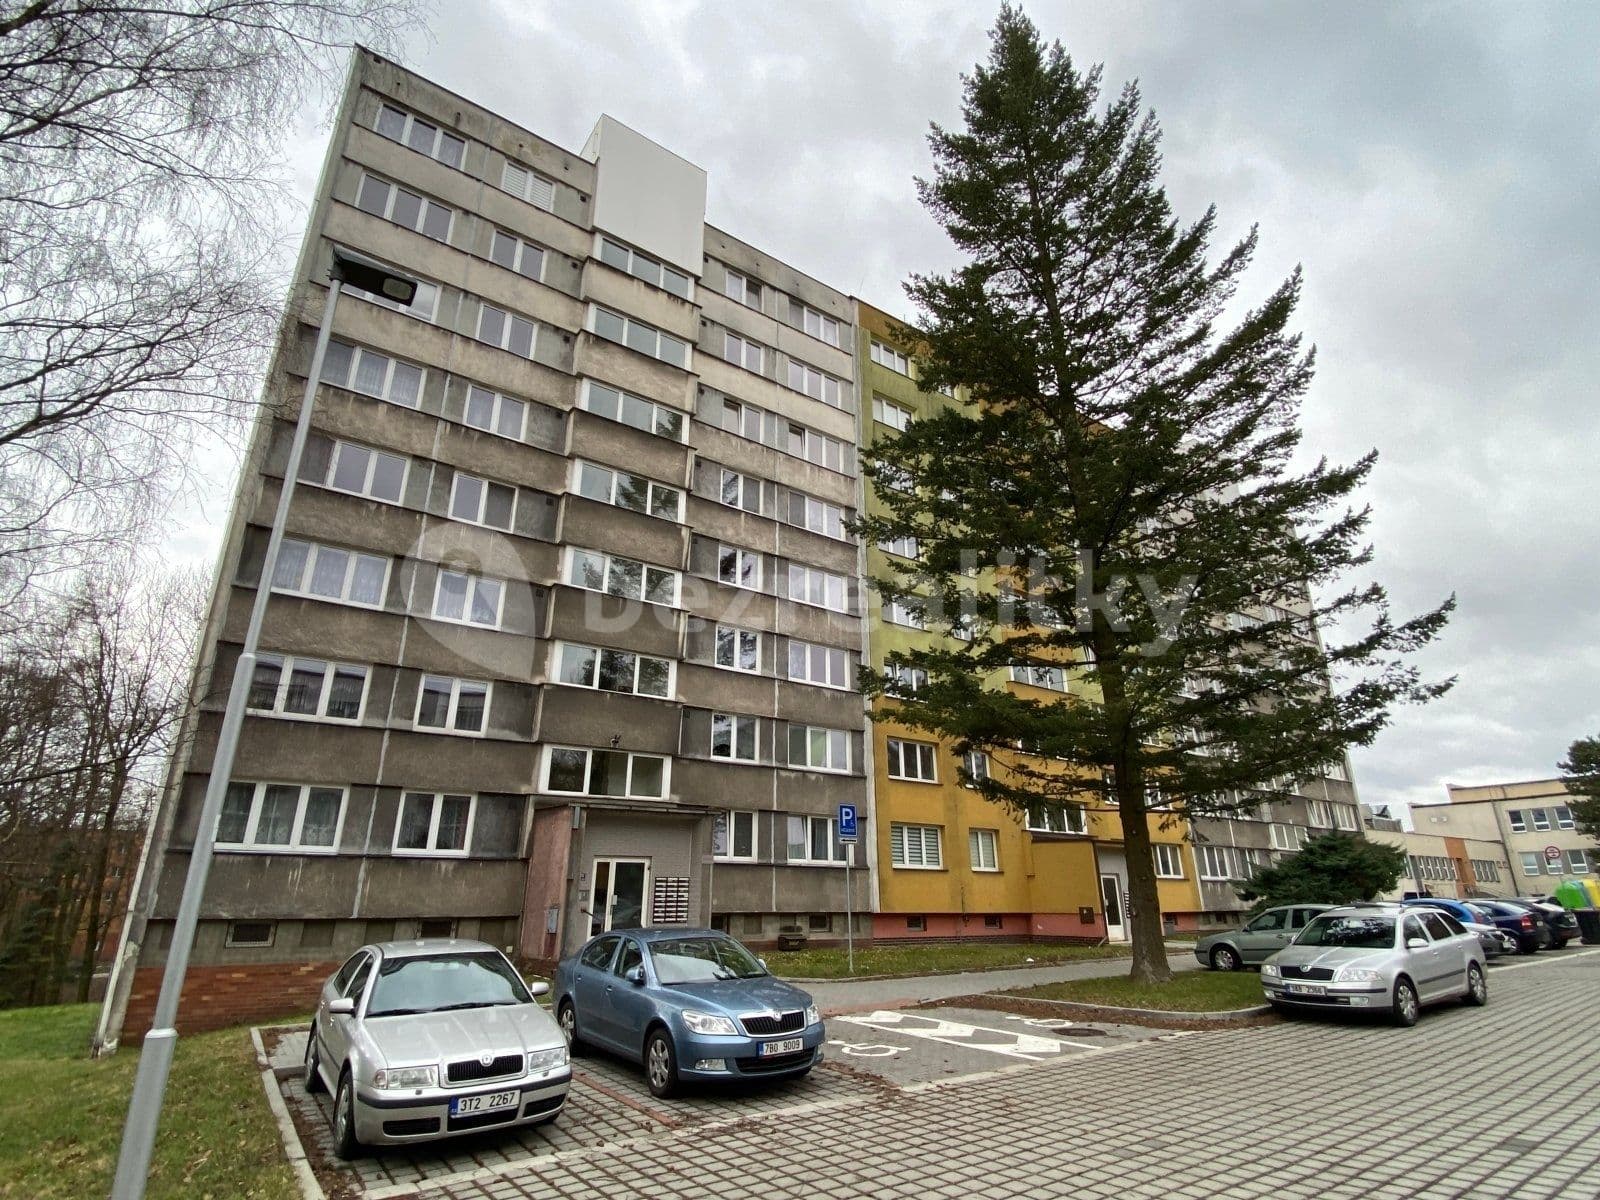 1 bedroom flat to rent, 36 m², Osvobození, Orlová, Moravskoslezský Region